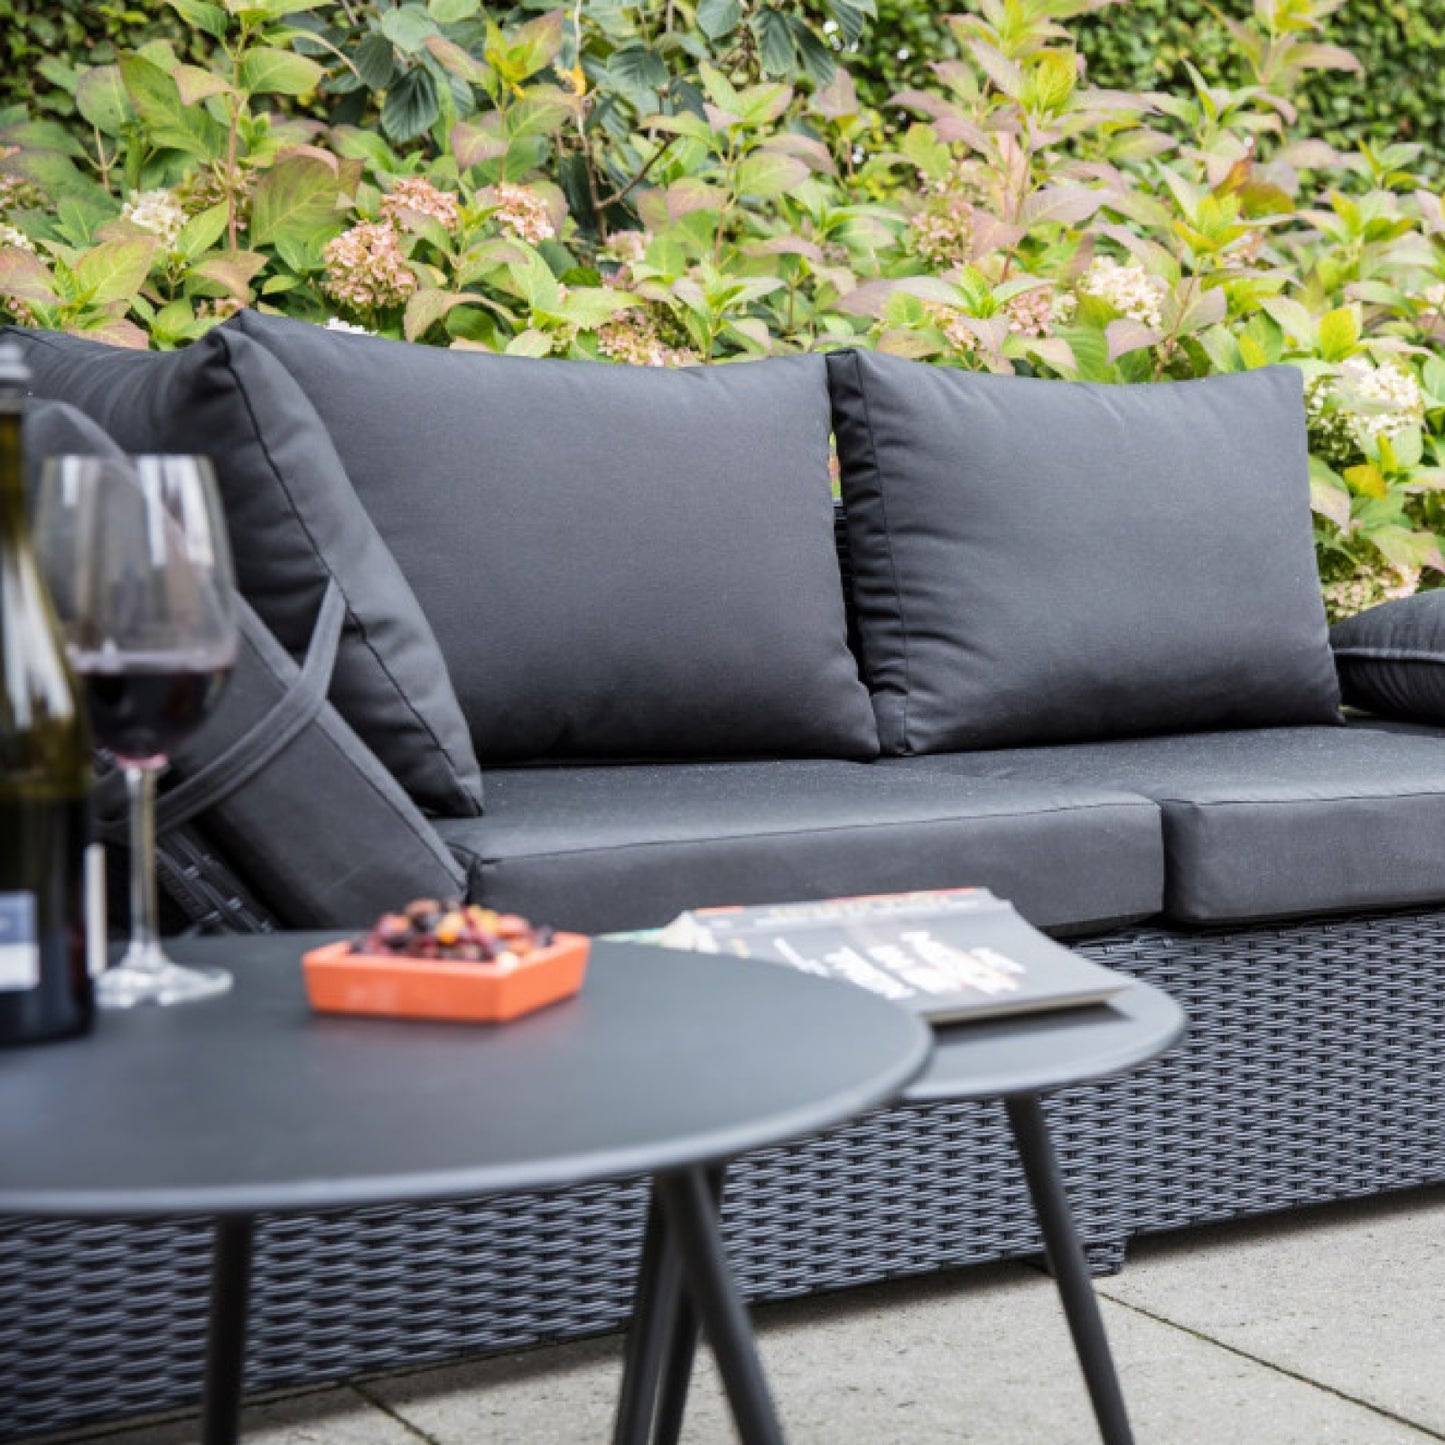 Eiförmiger, stylischer, geflochtener Gartenstuhl mit hellgrauem Sitzpolster und Gartenmöbel von AMD Möbel